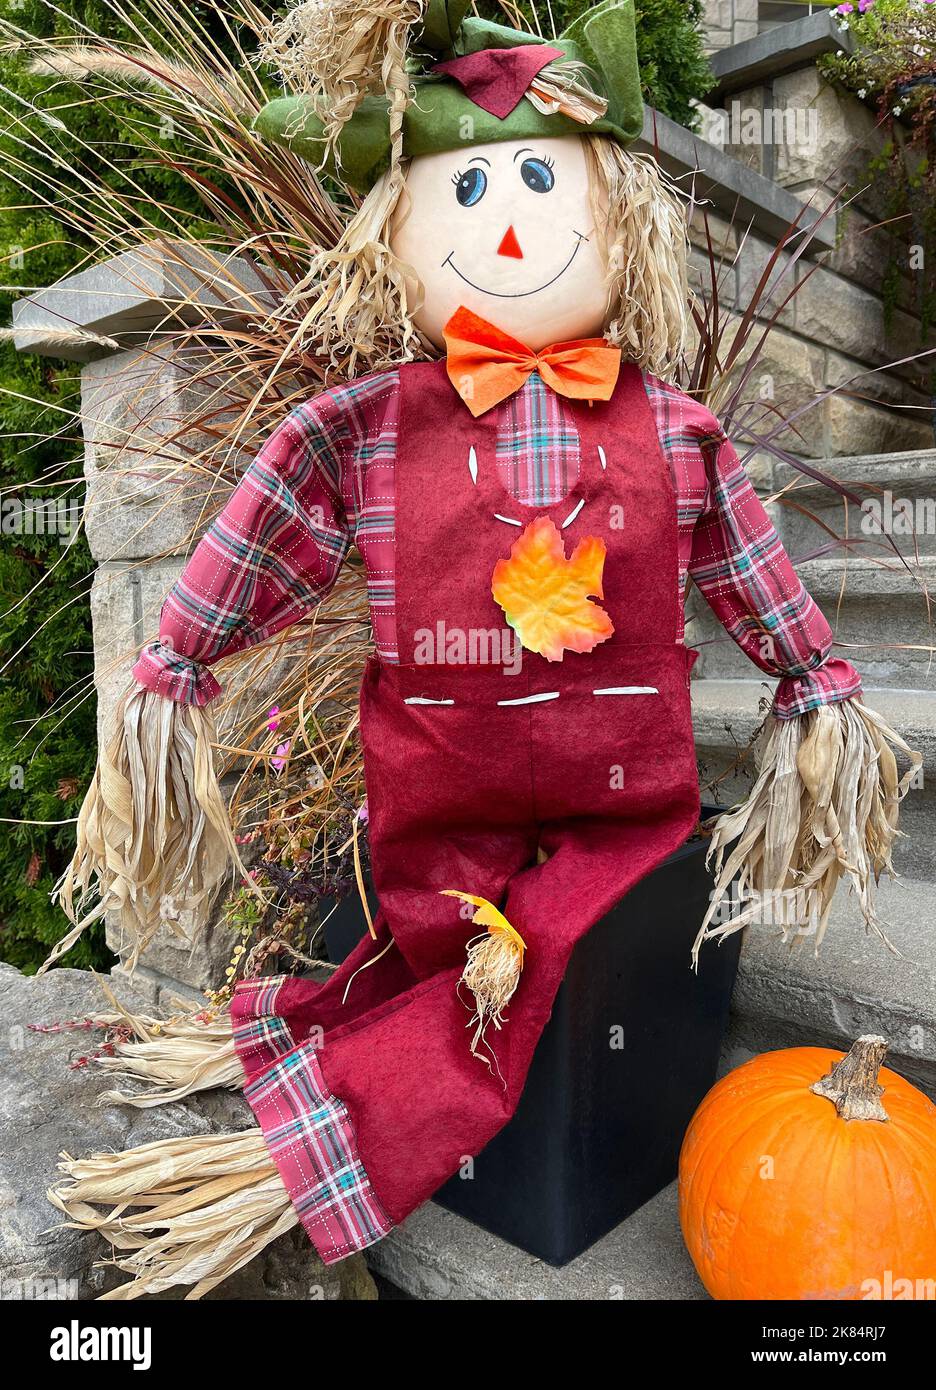 Poupée décorative d'automne et d'Halloween avec potiron devant la maison, Canada Banque D'Images